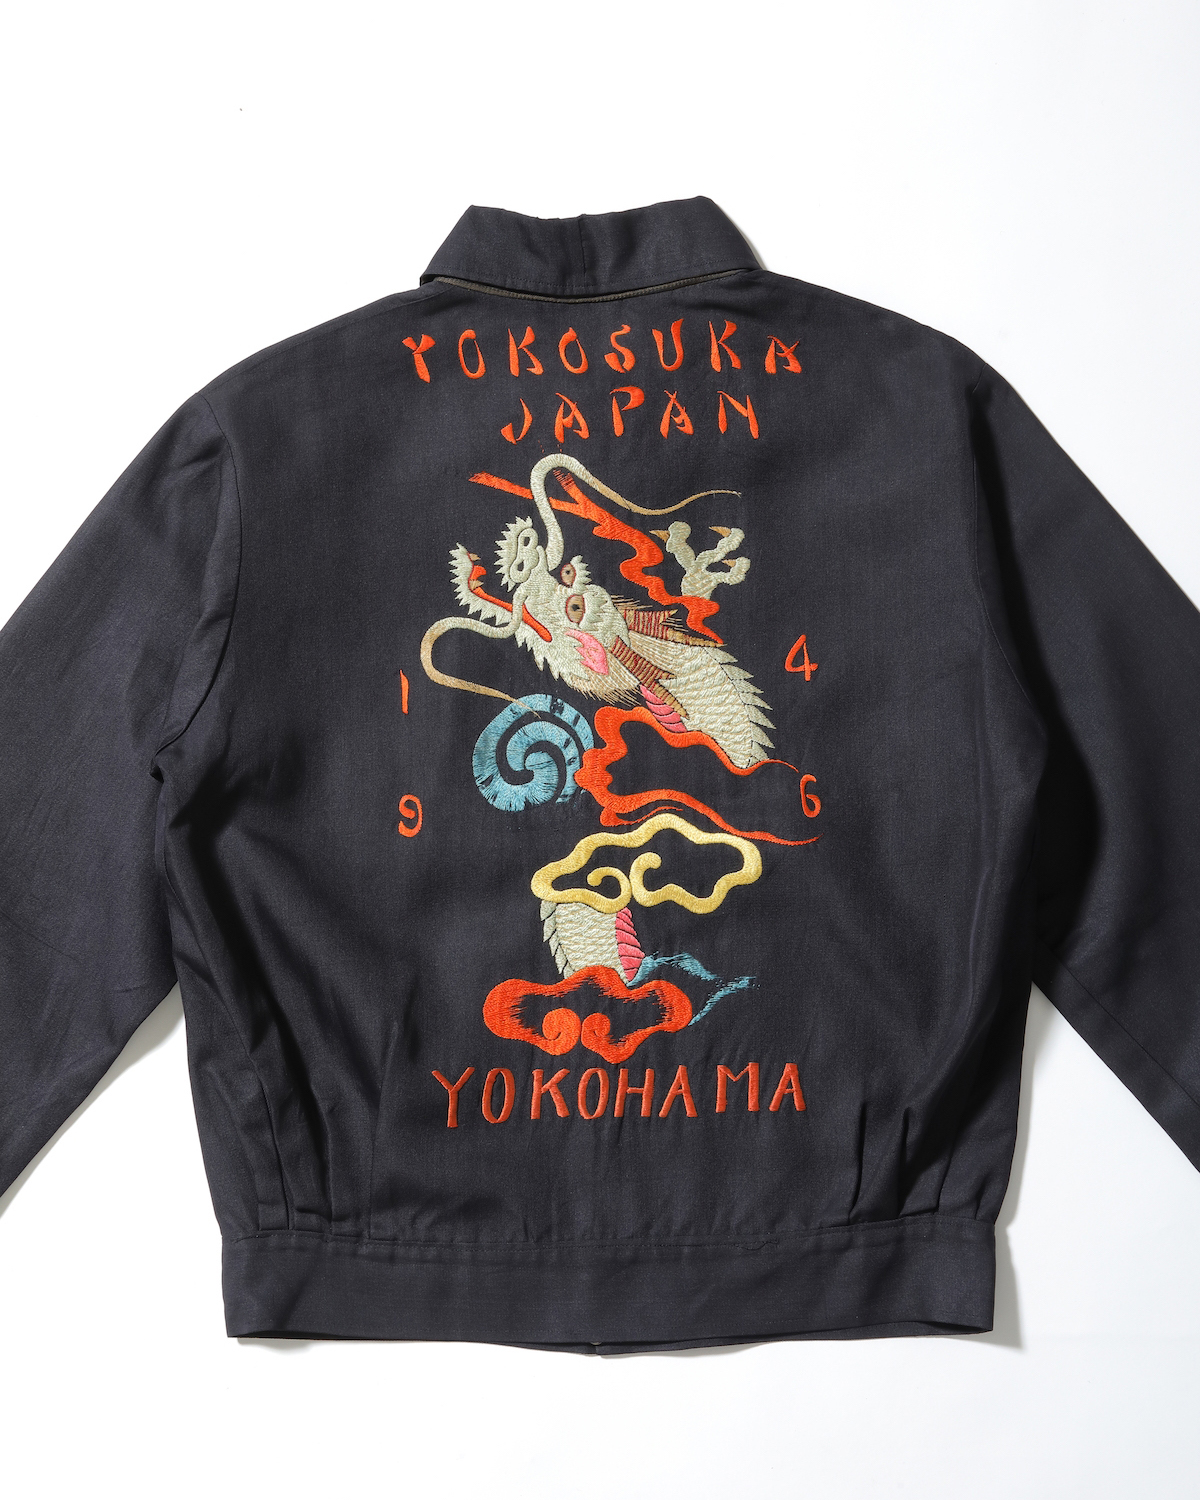 《YOKOSUKA Dragon》 (detail) 1946 Taylor Toyo (Toyo Enterprises Co., Ltd.) collection